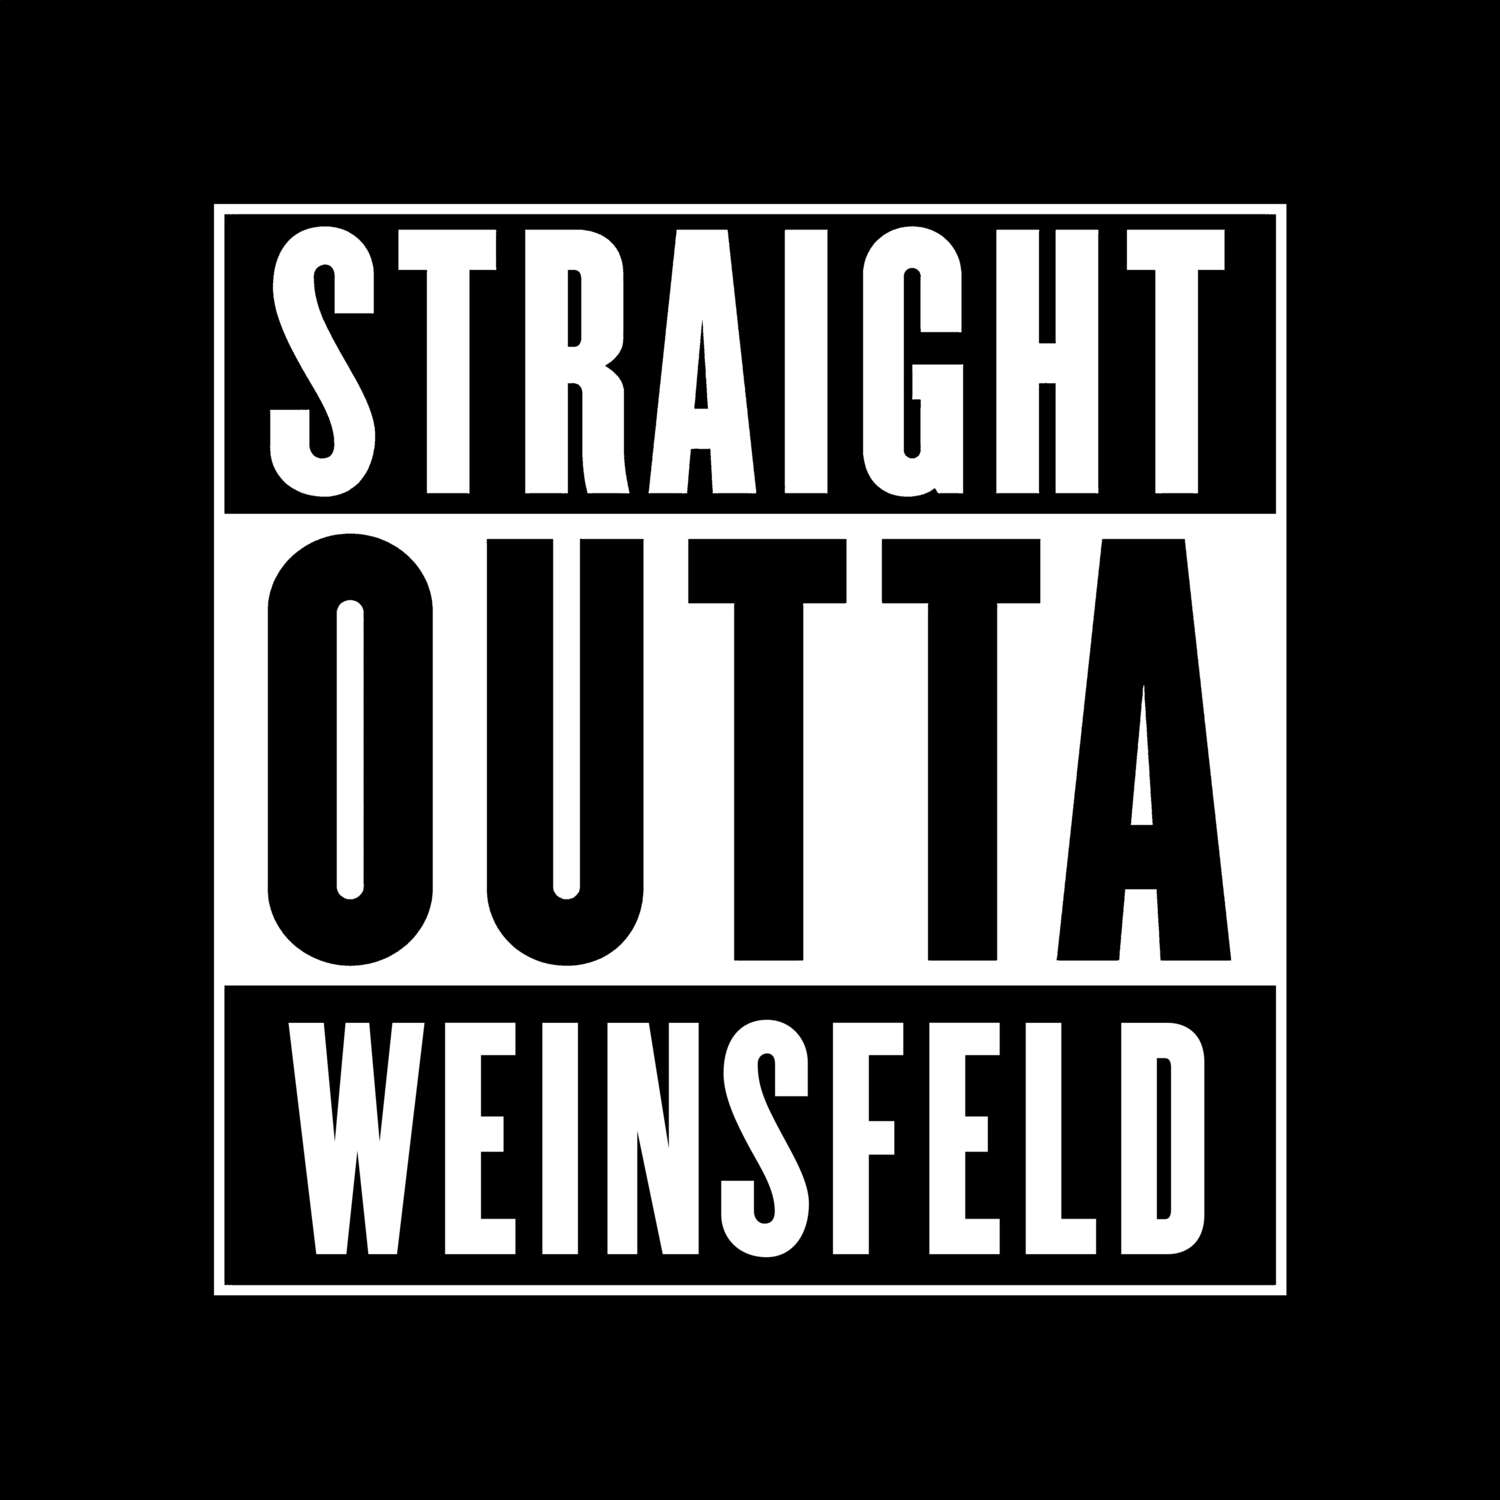 Weinsfeld T-Shirt »Straight Outta«